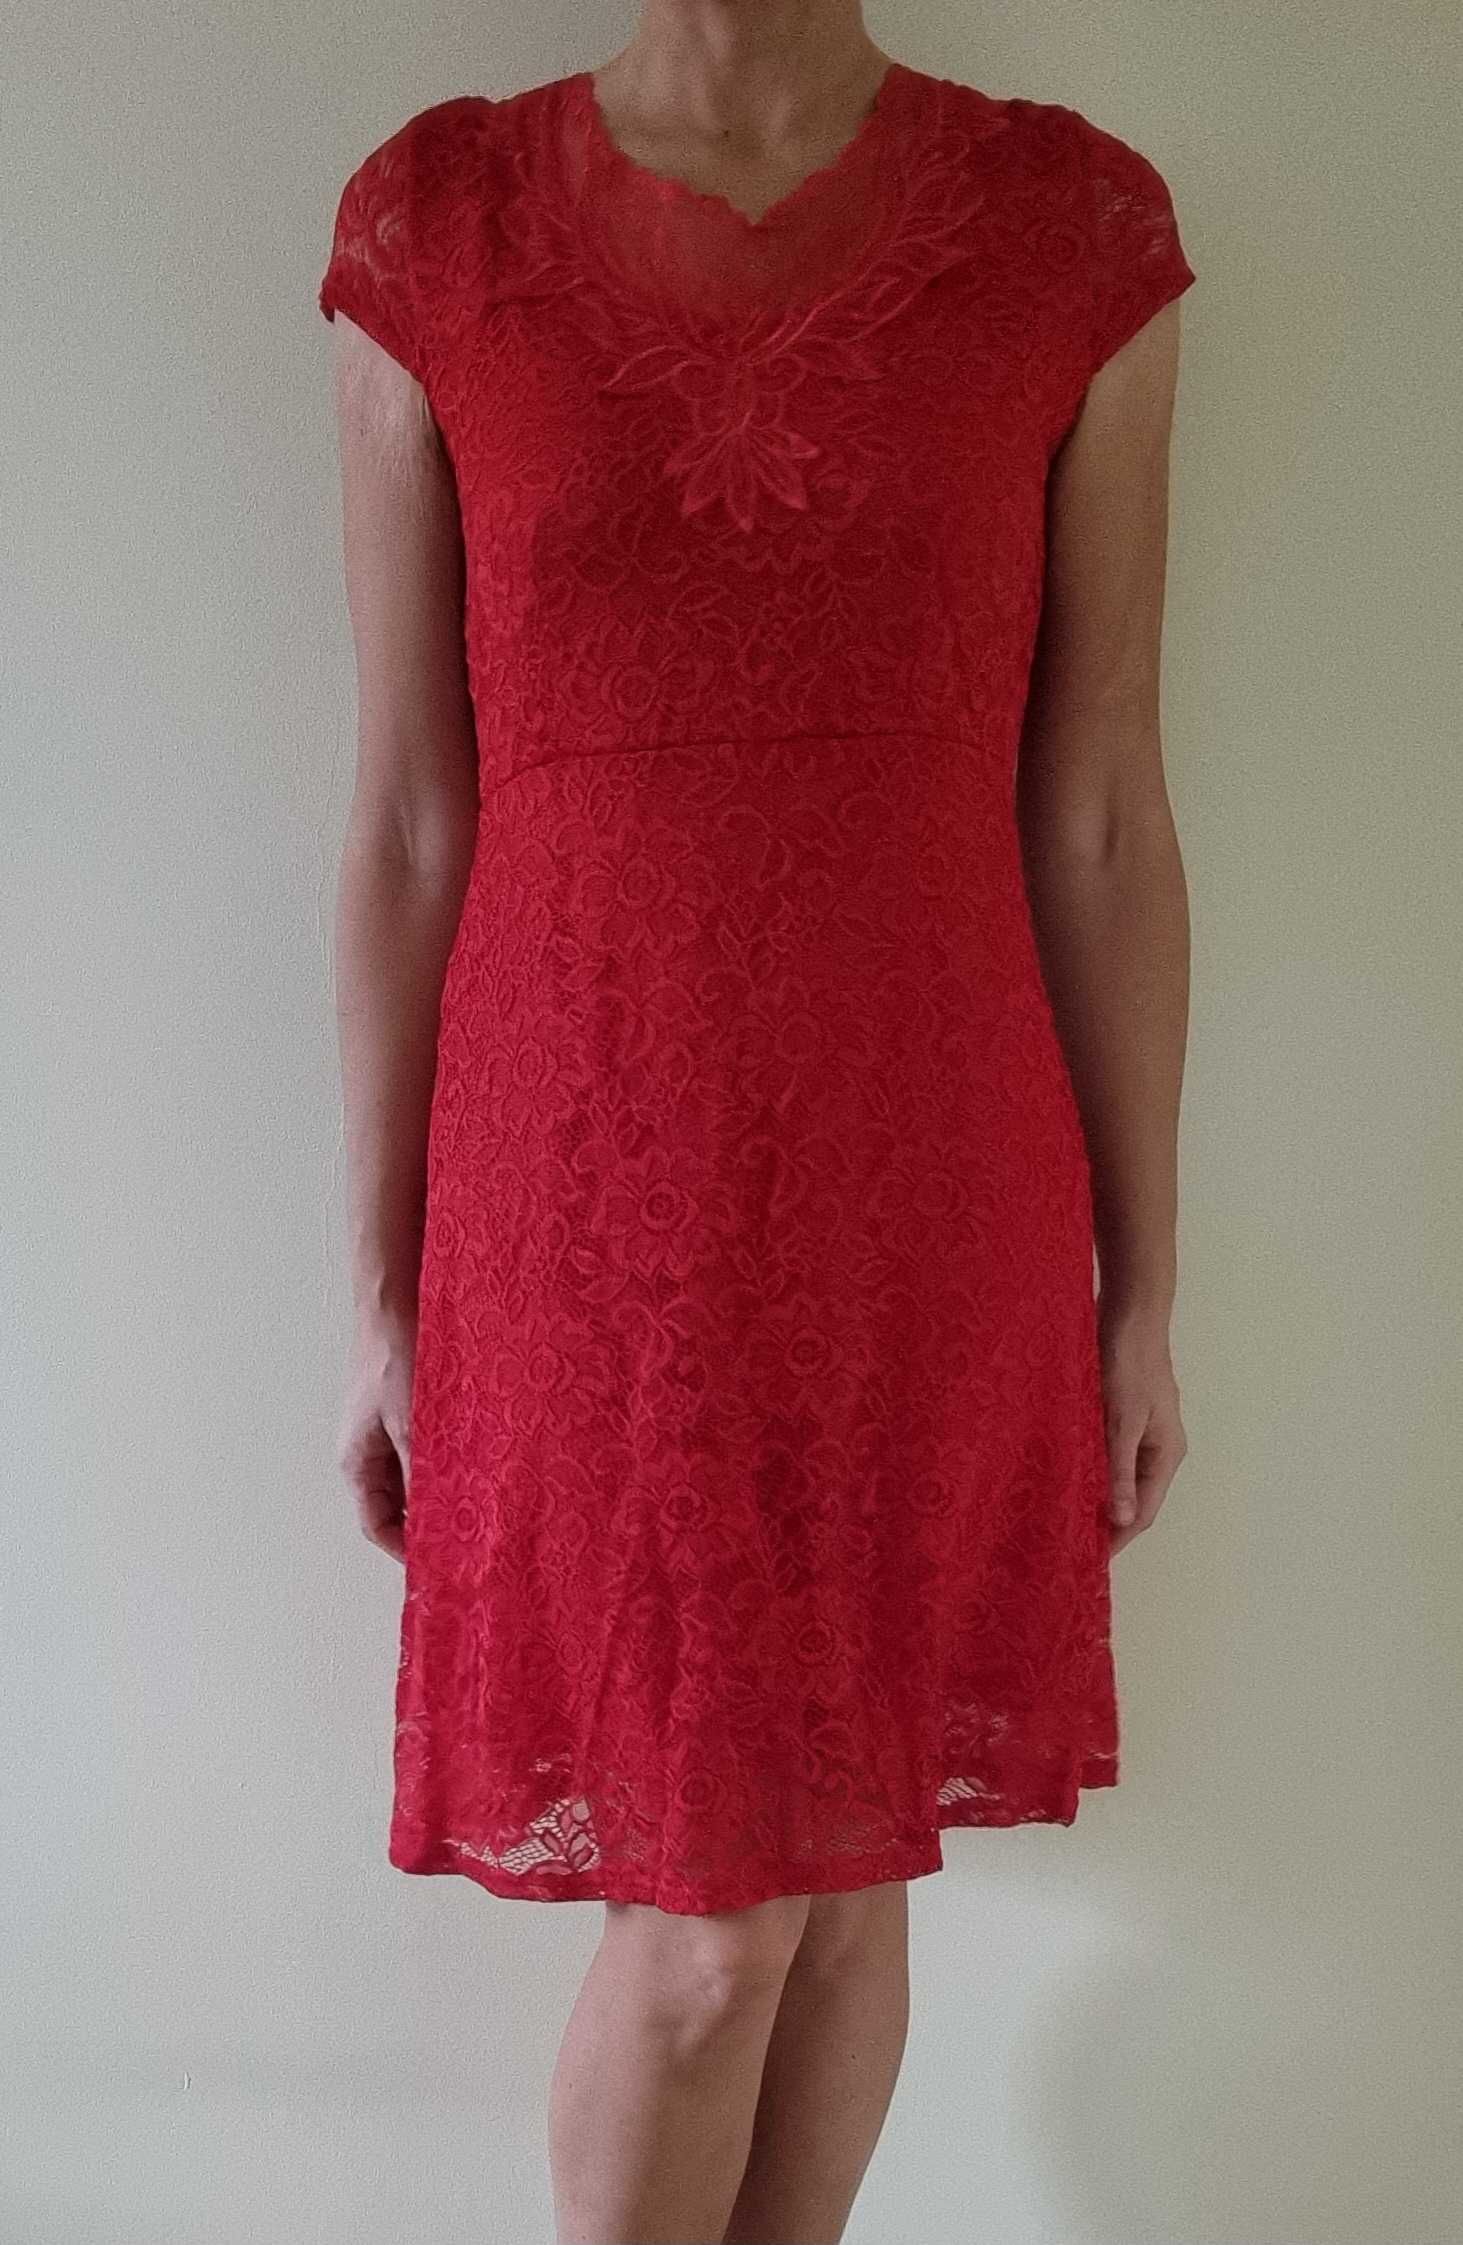 Elegancka czerwona, koronkowa sukienka - polecam!